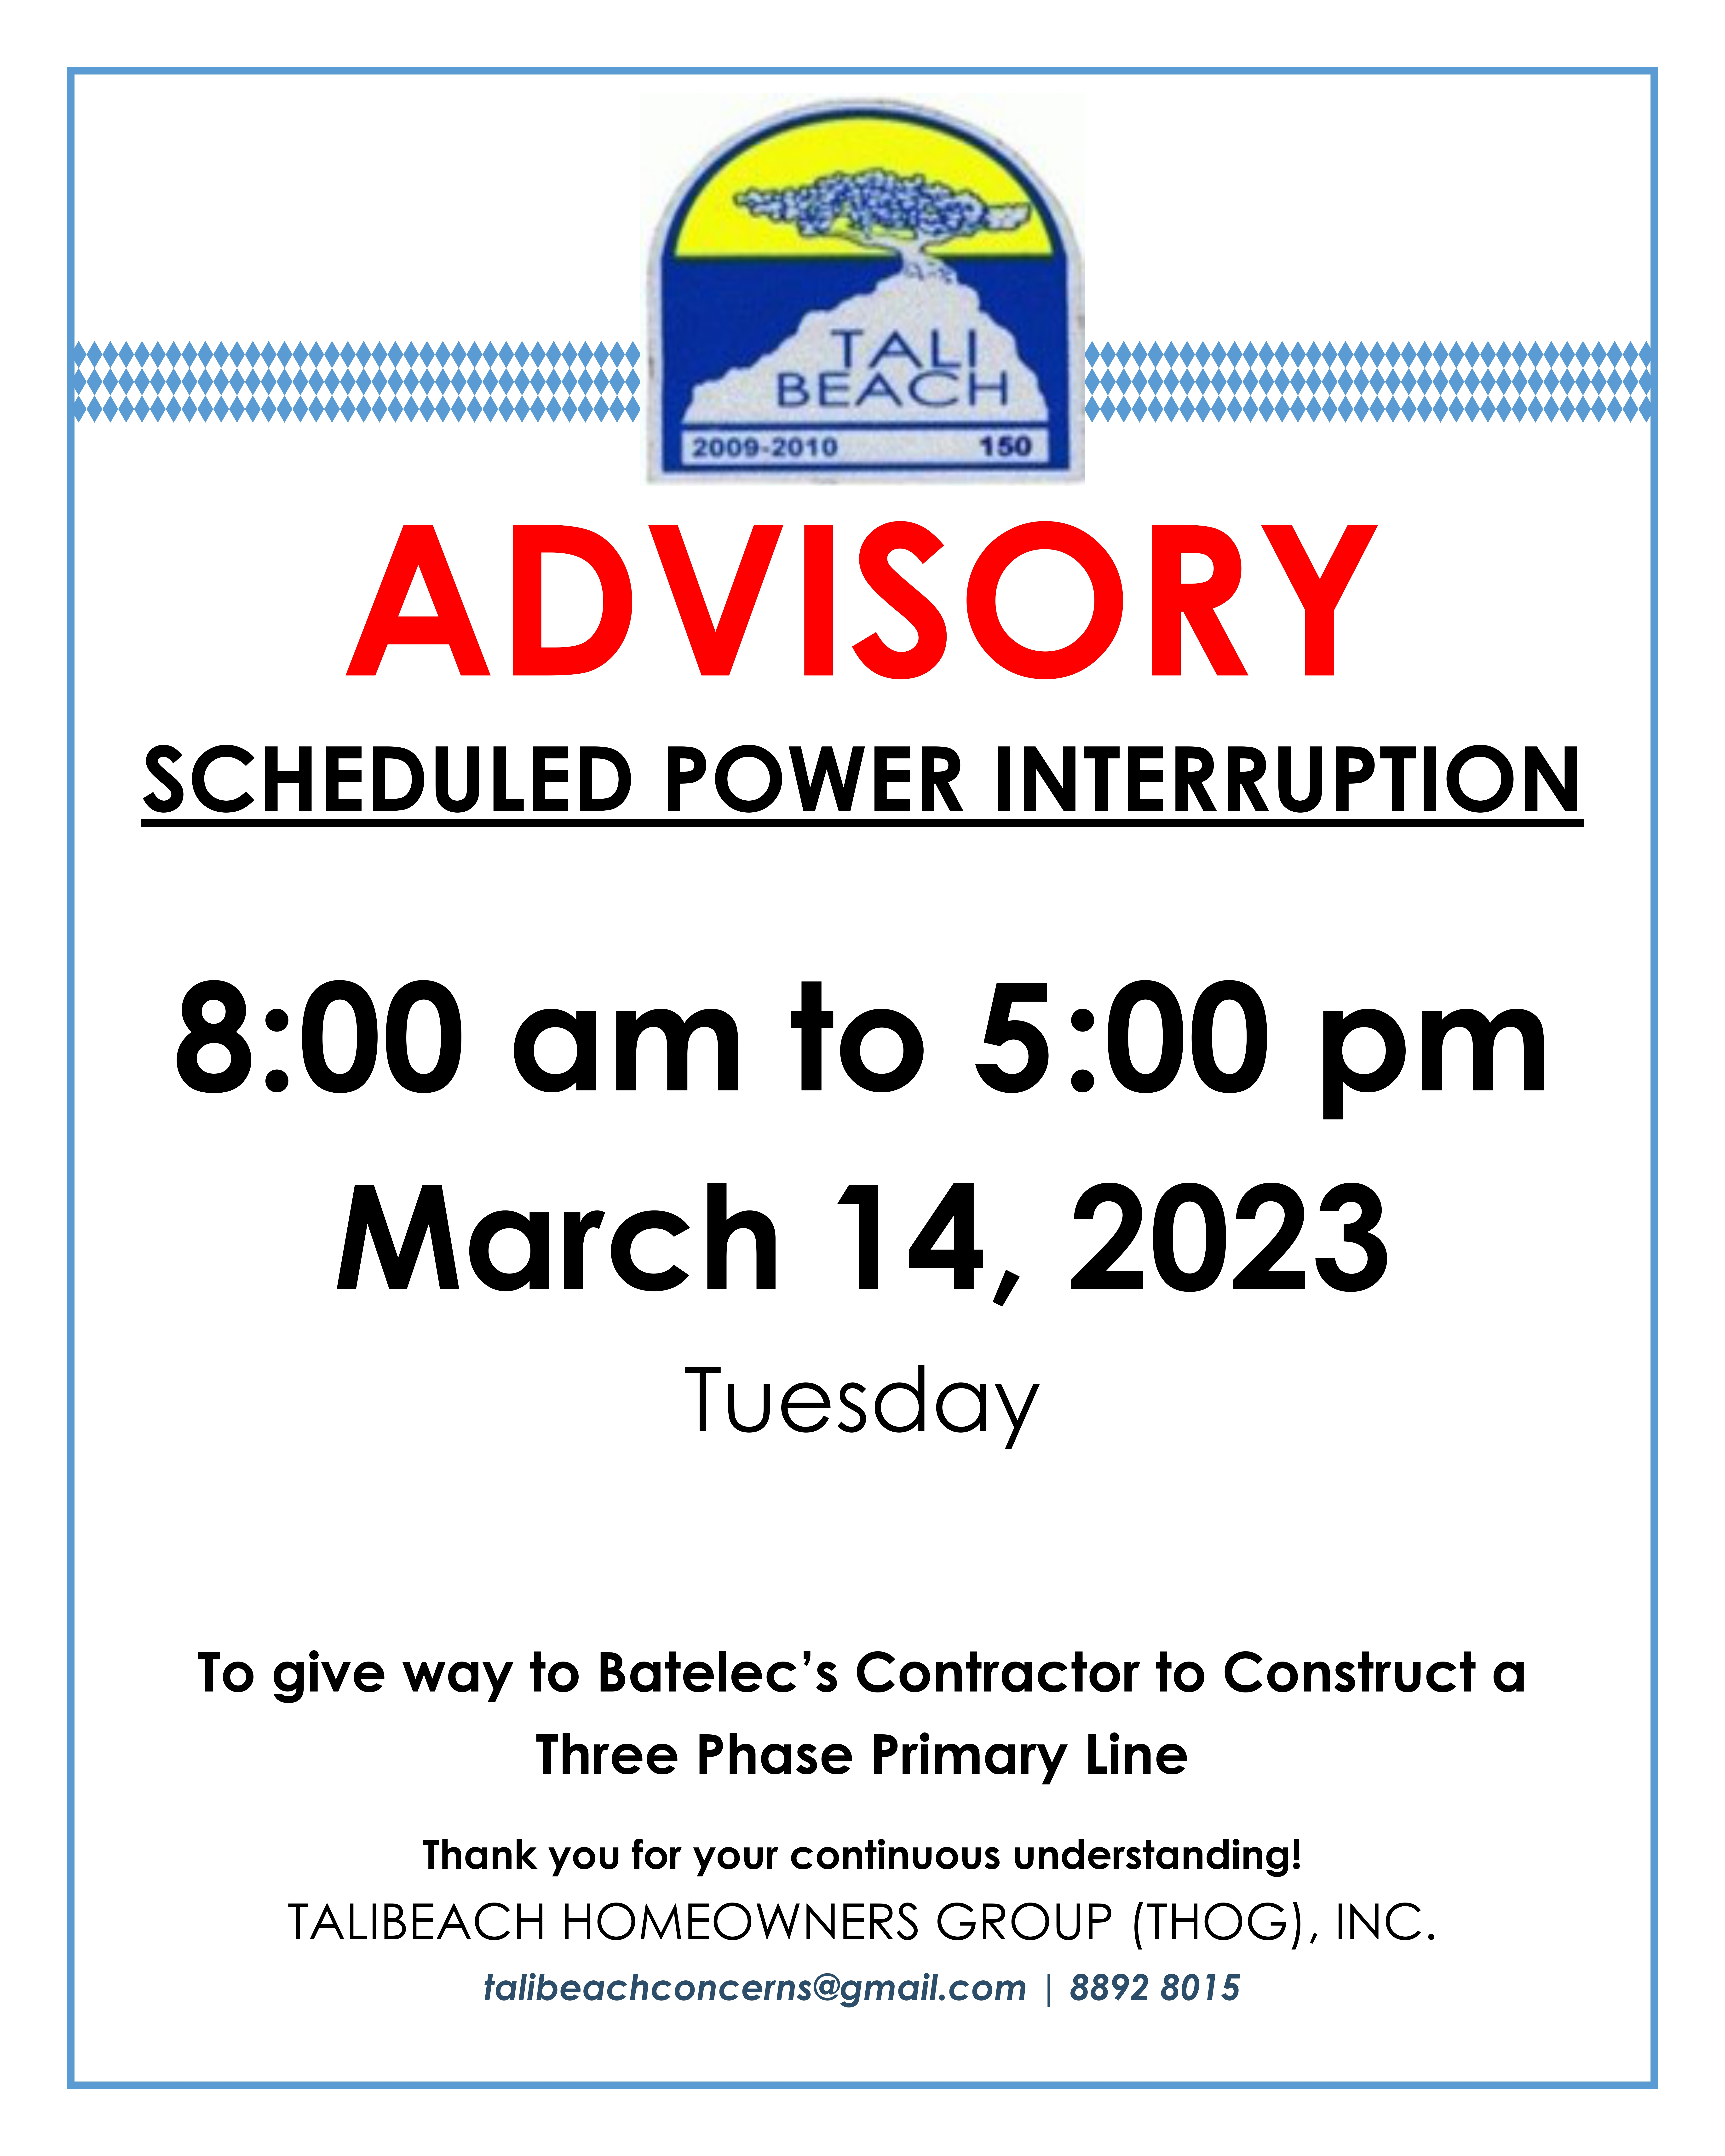 SCHEDULED POWER INTERRUPTIONS MARCH 14, 2023